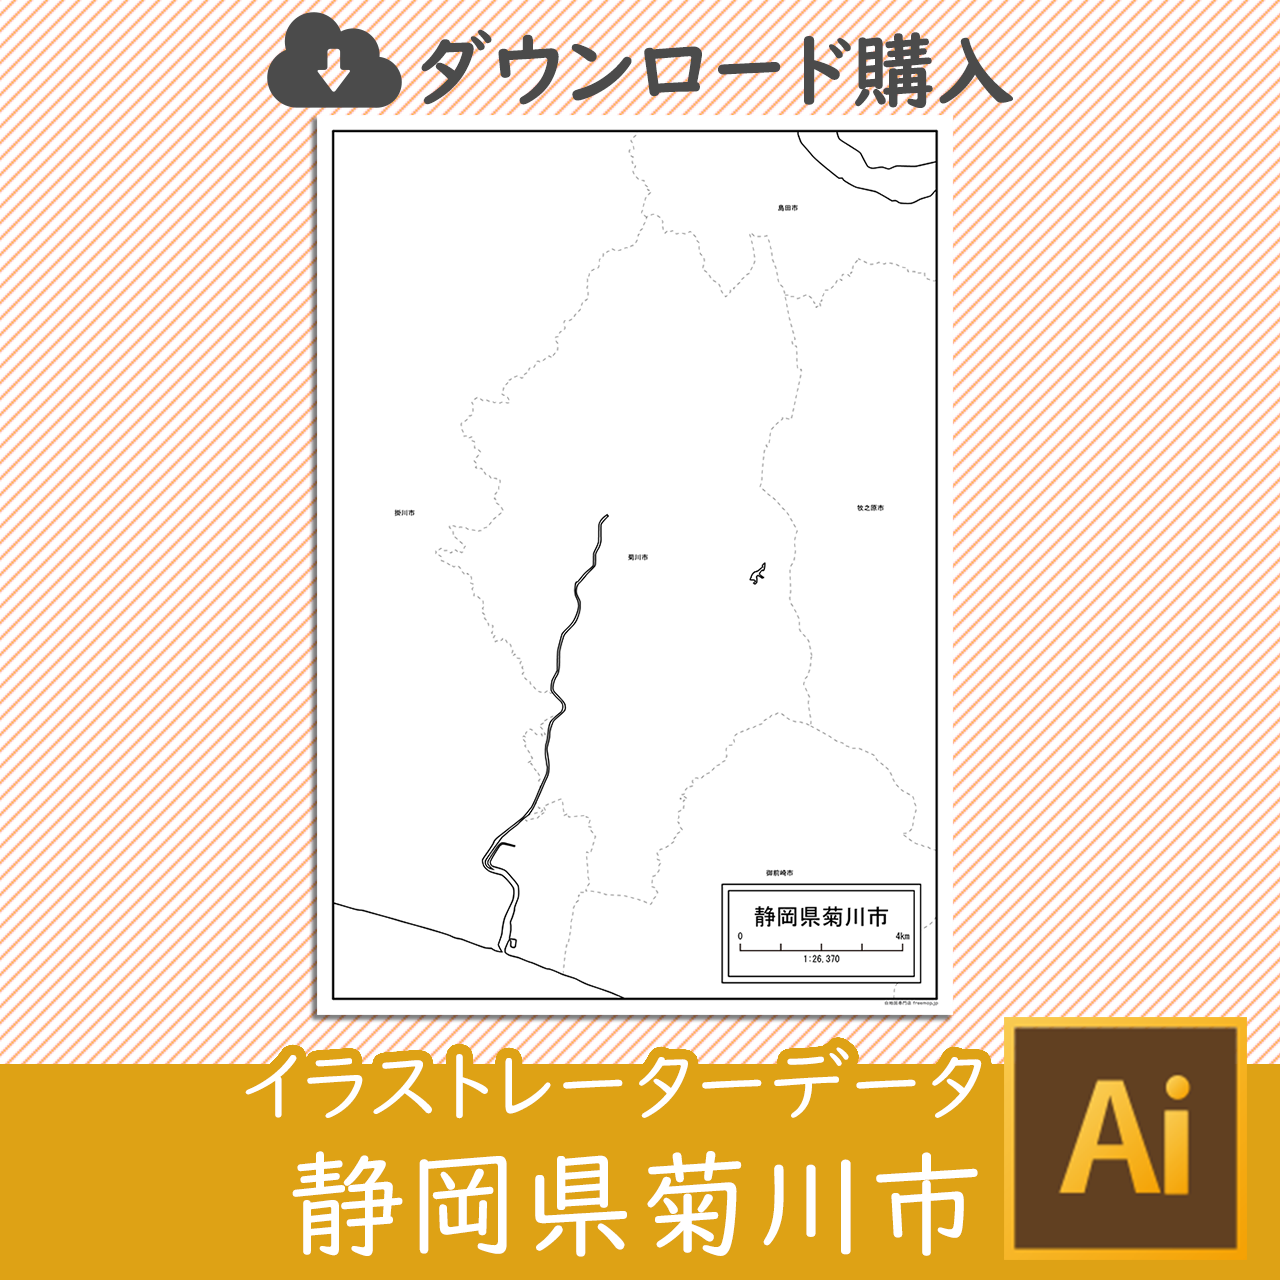 菊川市の白地図のサムネイル